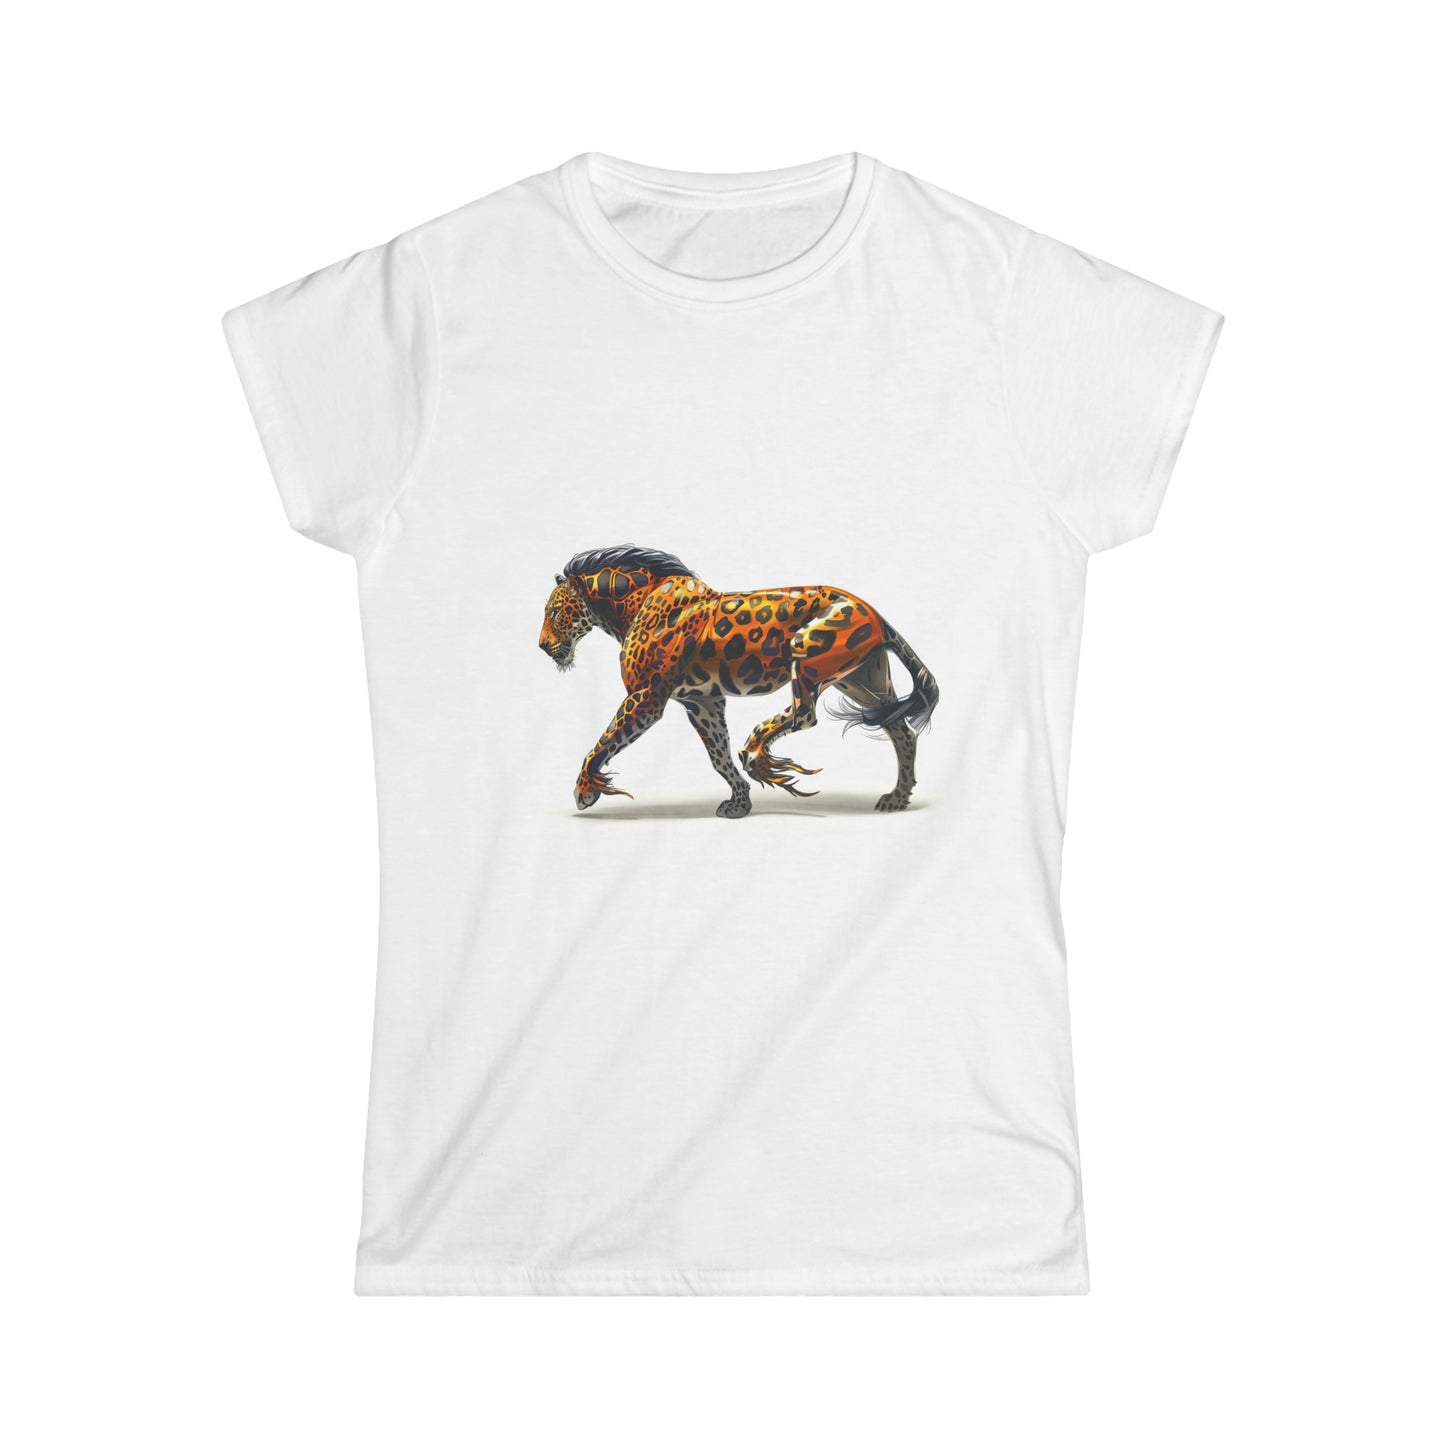 Women's Softstyle Tee: Leopard/Stallion Hybrid